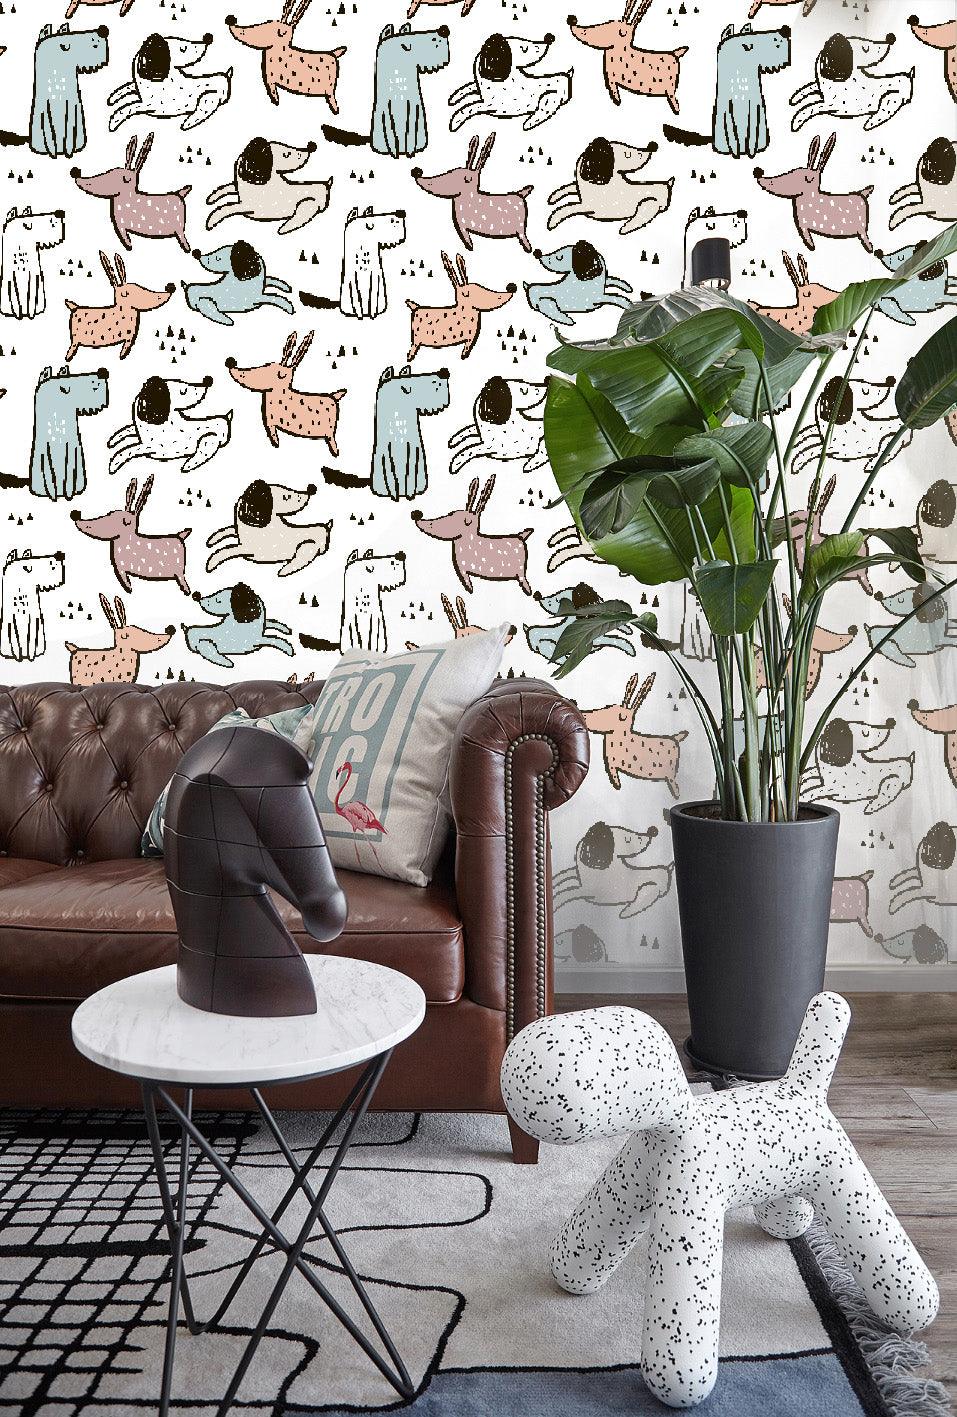 3D Cartoon Animals Dogs Wall Mural Wallpaper 09- Jess Art Decoration